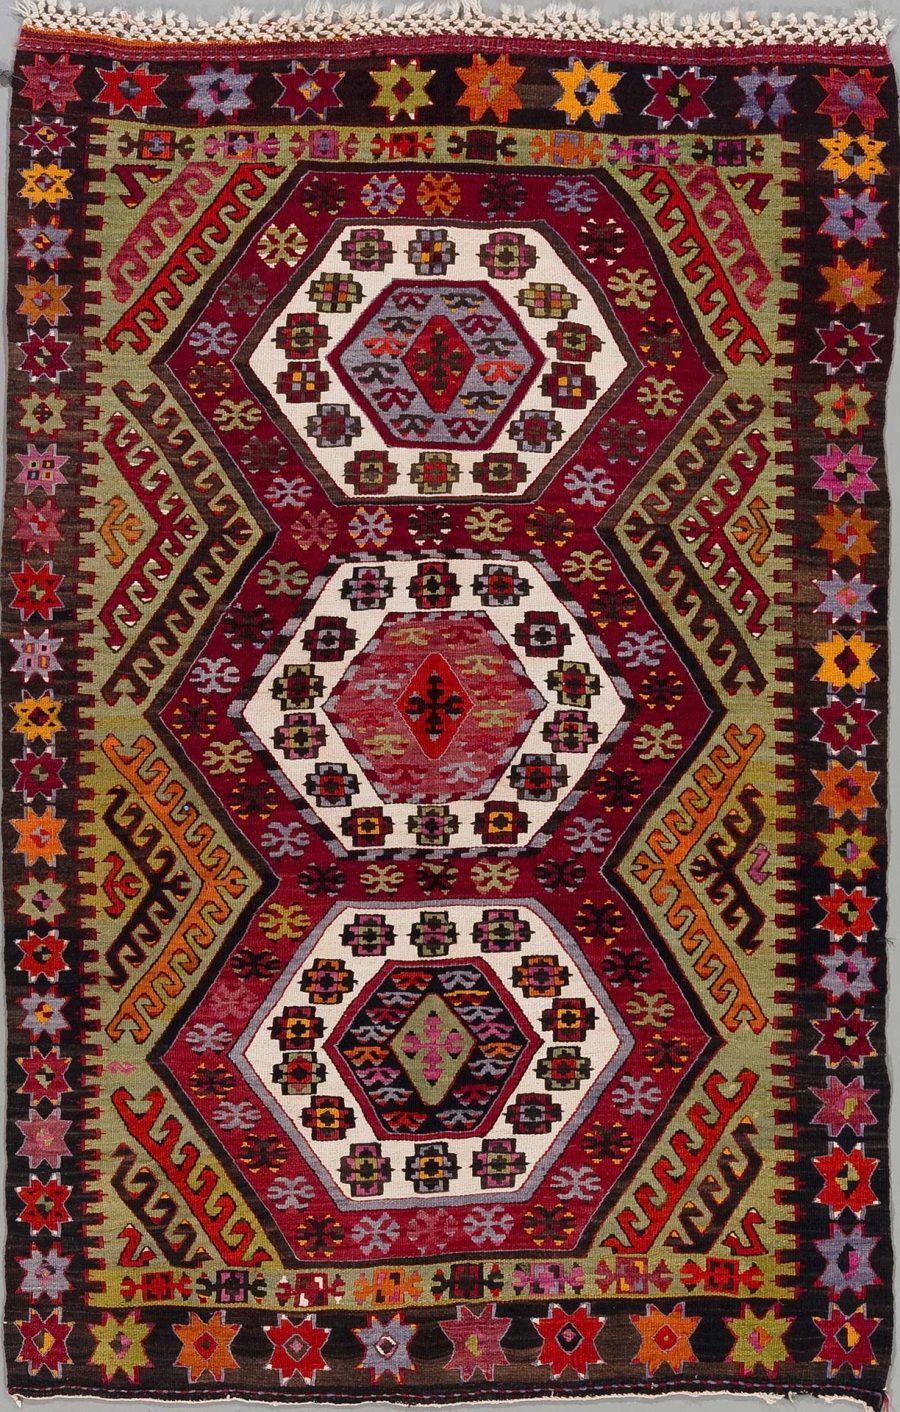 Handgewebter Teppich mit komplexen Mustern und reicher Farbpalette, bestehend aus zentralen Diamanten und umgebenden geometrischen und floralen Motiven in Rot-, Schwarz-, Grün- und Gelbtönen.